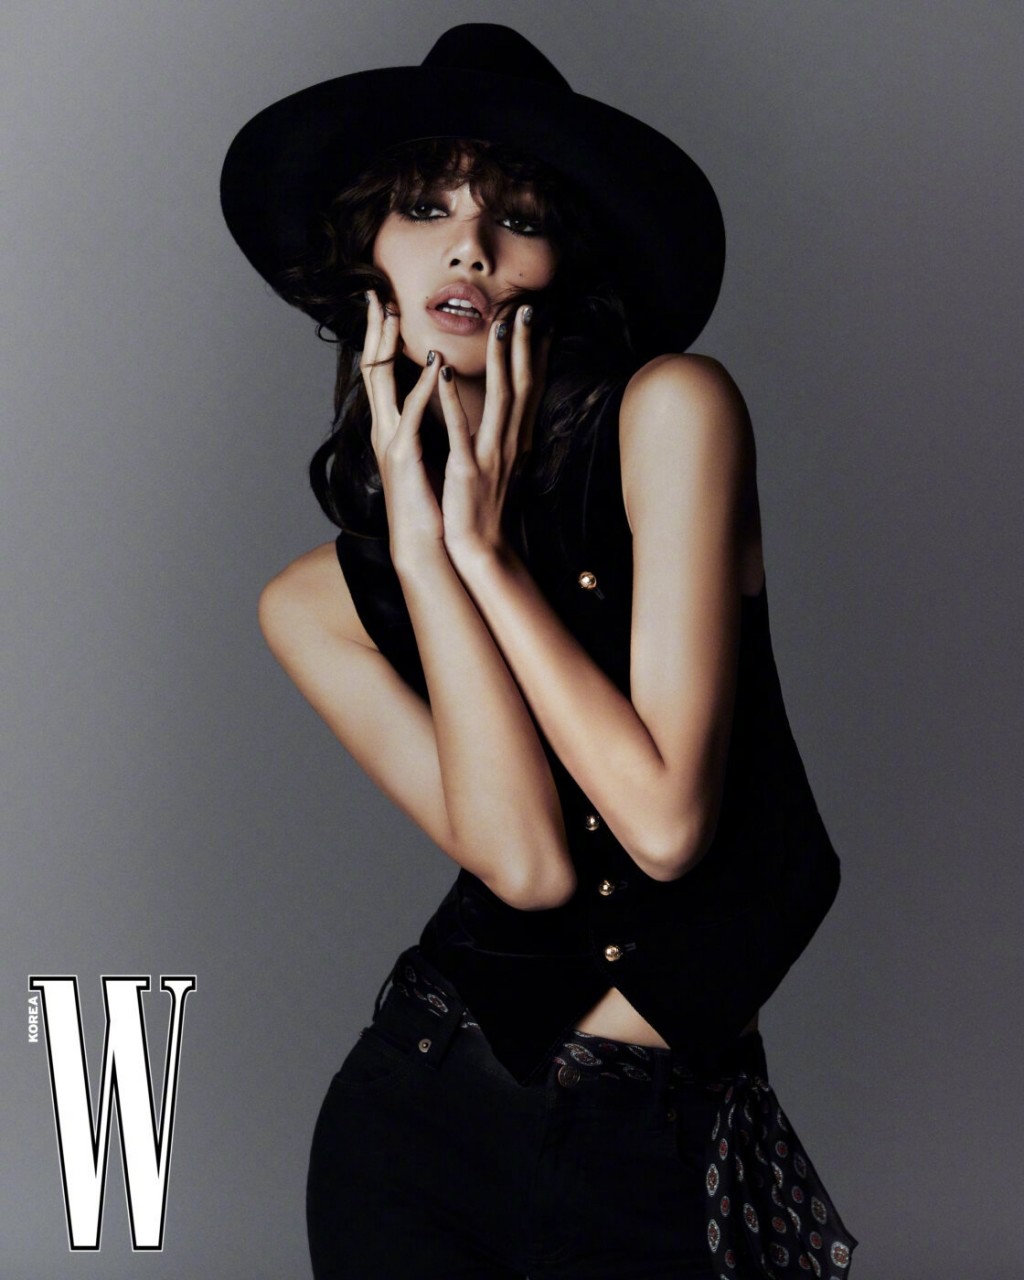 LISA烟熏卷发造型酷帅时髦封面画报图片